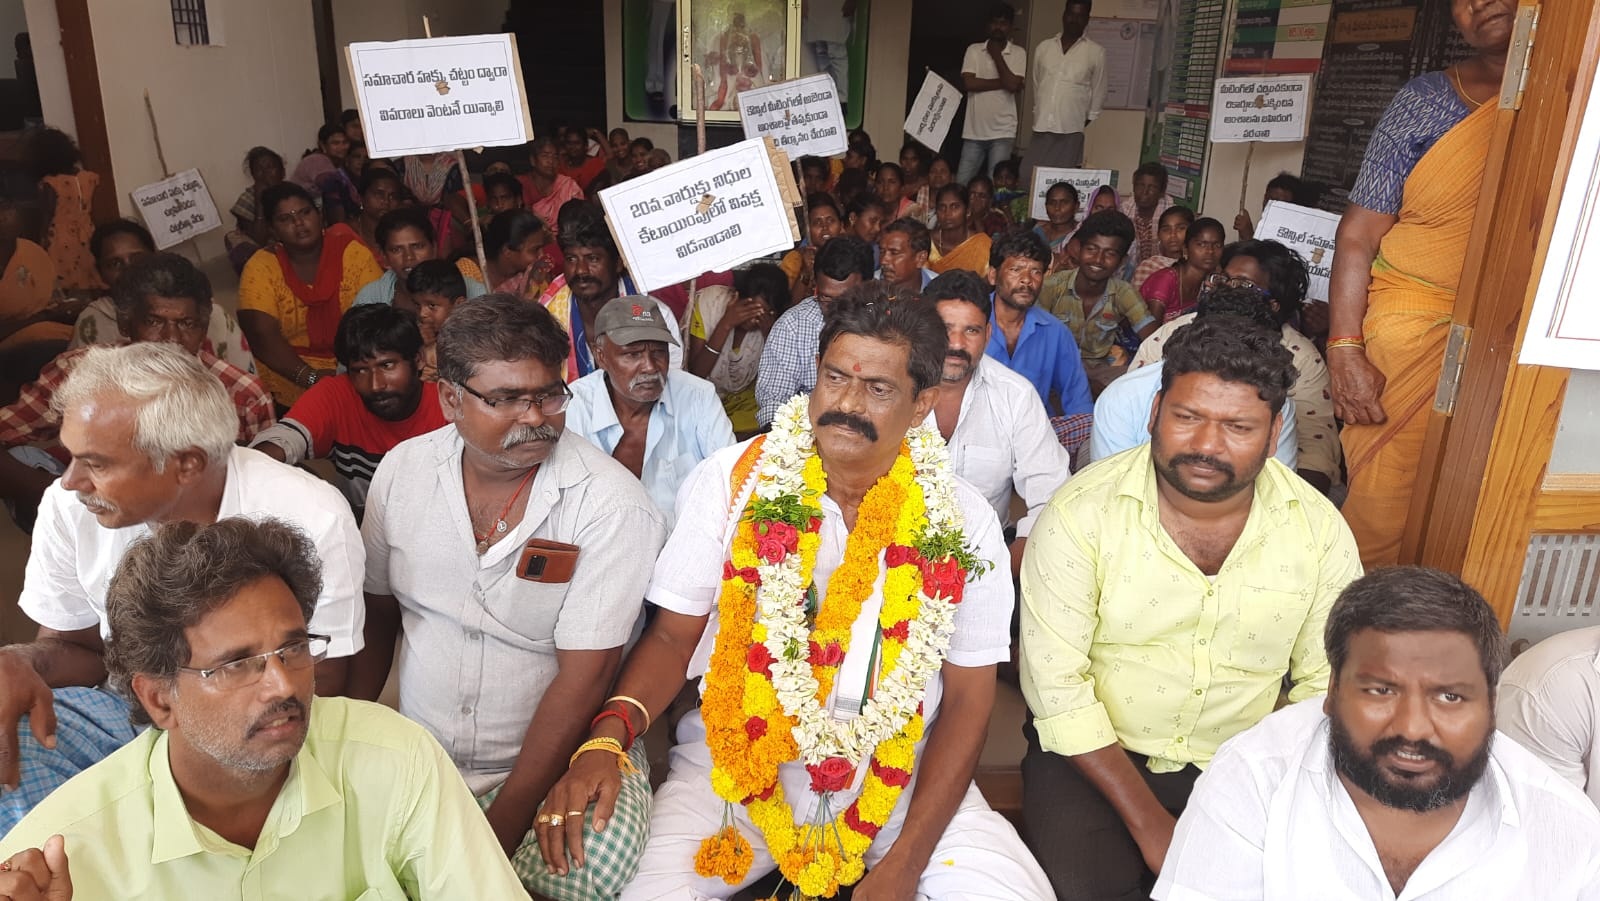 ఫొటో : మున్సిపల్‌ కార్యాలయం ఎదుట ఆందోళన చేపడుతున్న కౌన్సిలర్‌ సూరా భాస్కర్‌రెడ్డి